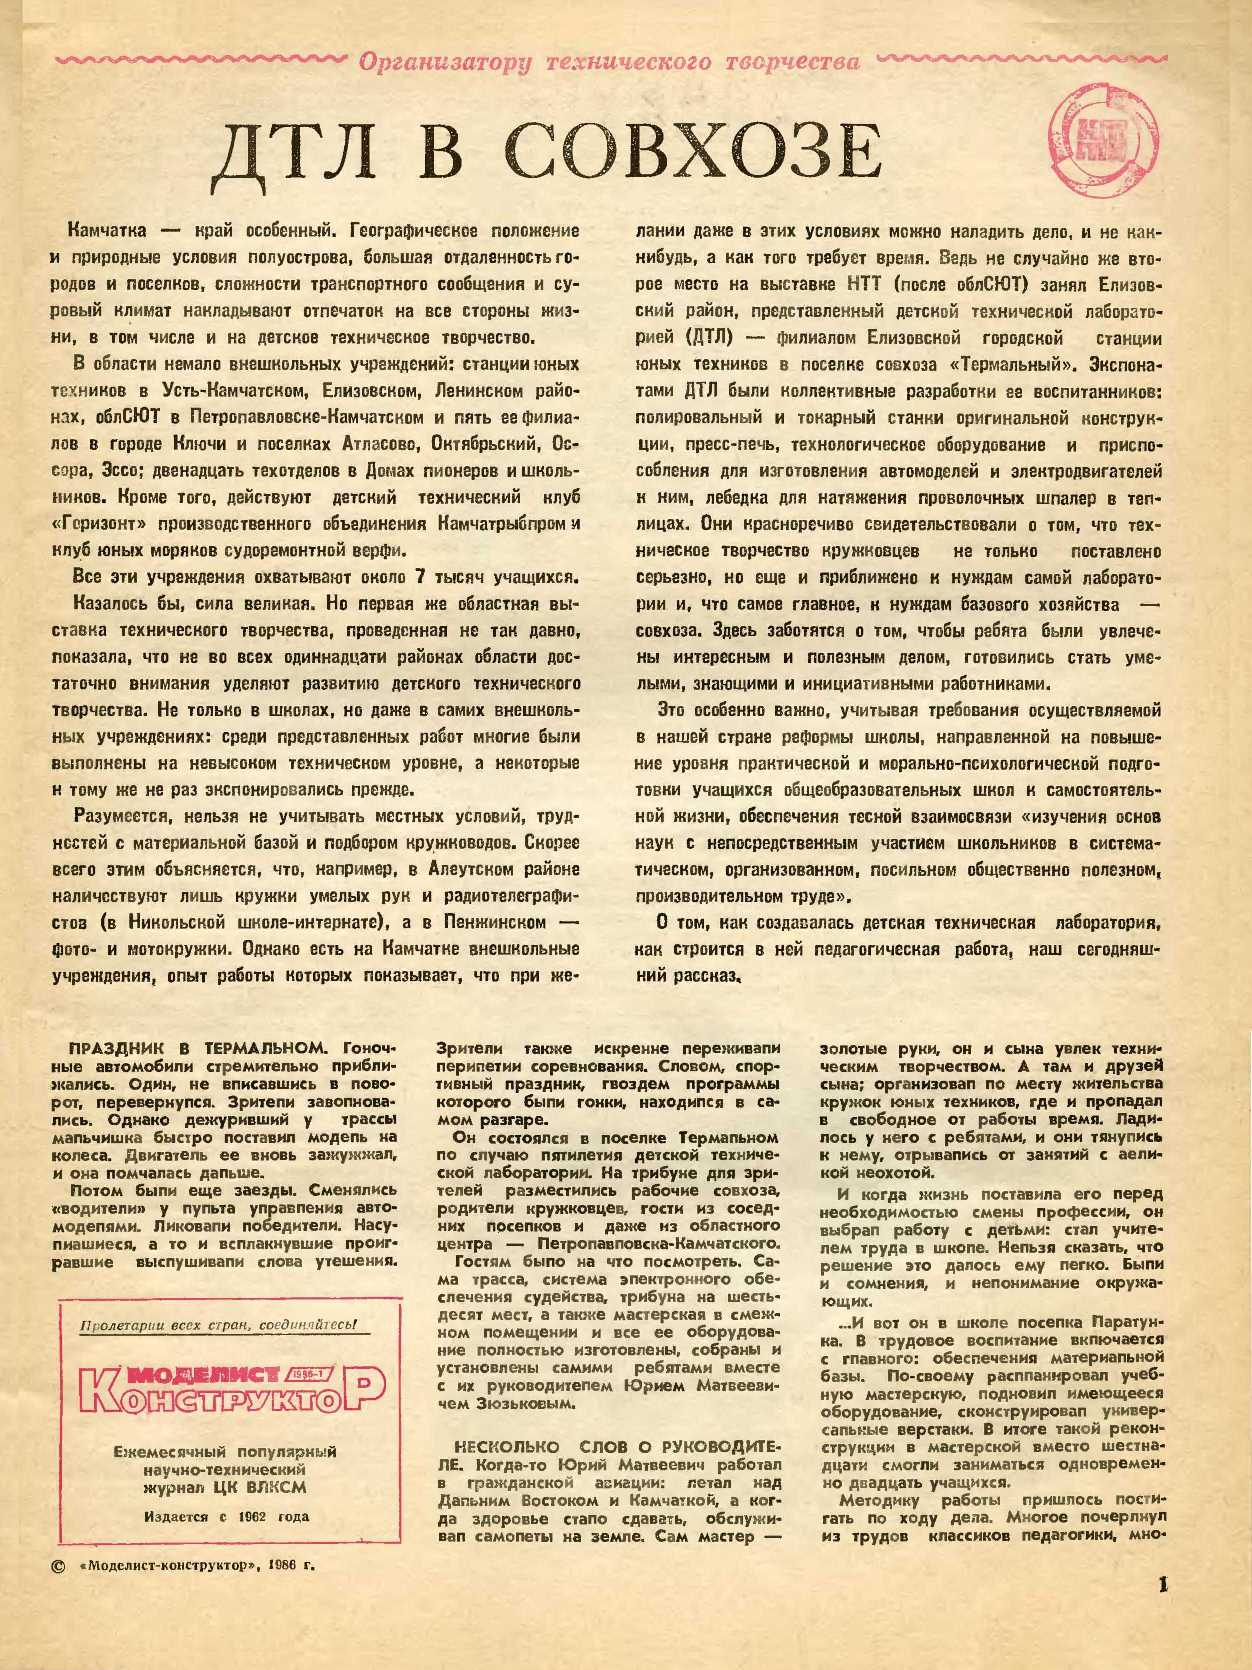 МК 1, 1986, 1 c.